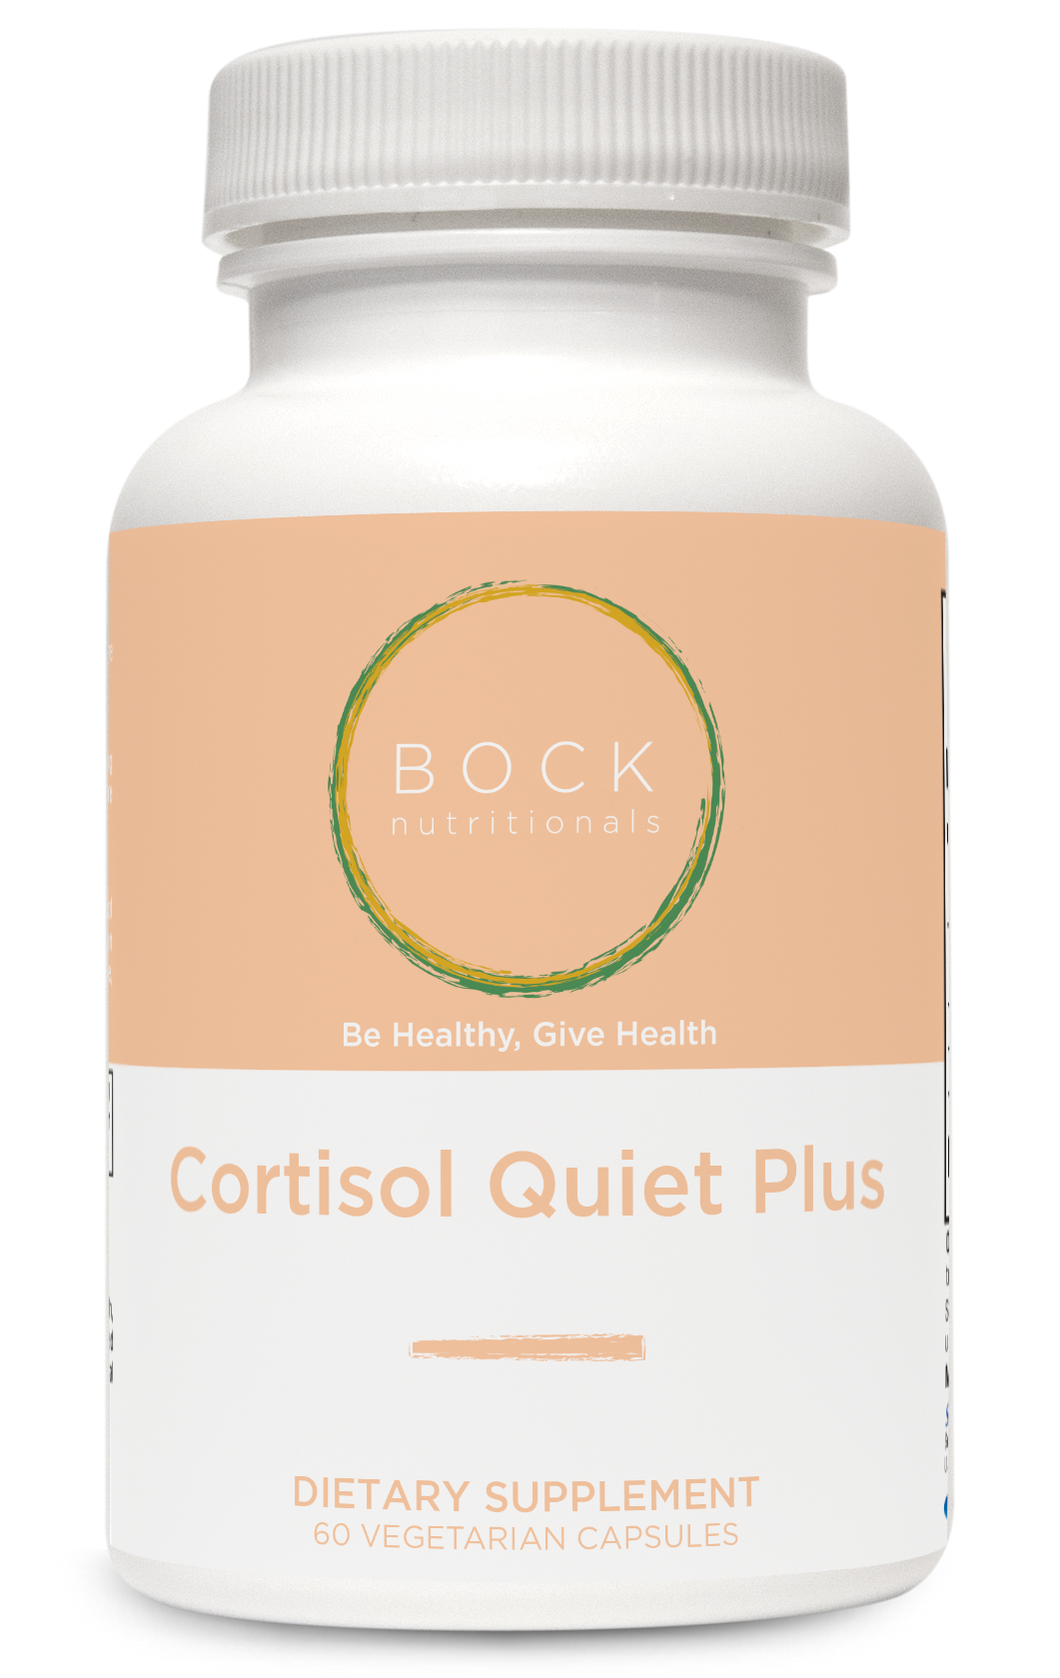 Cortisol Quiet Plus